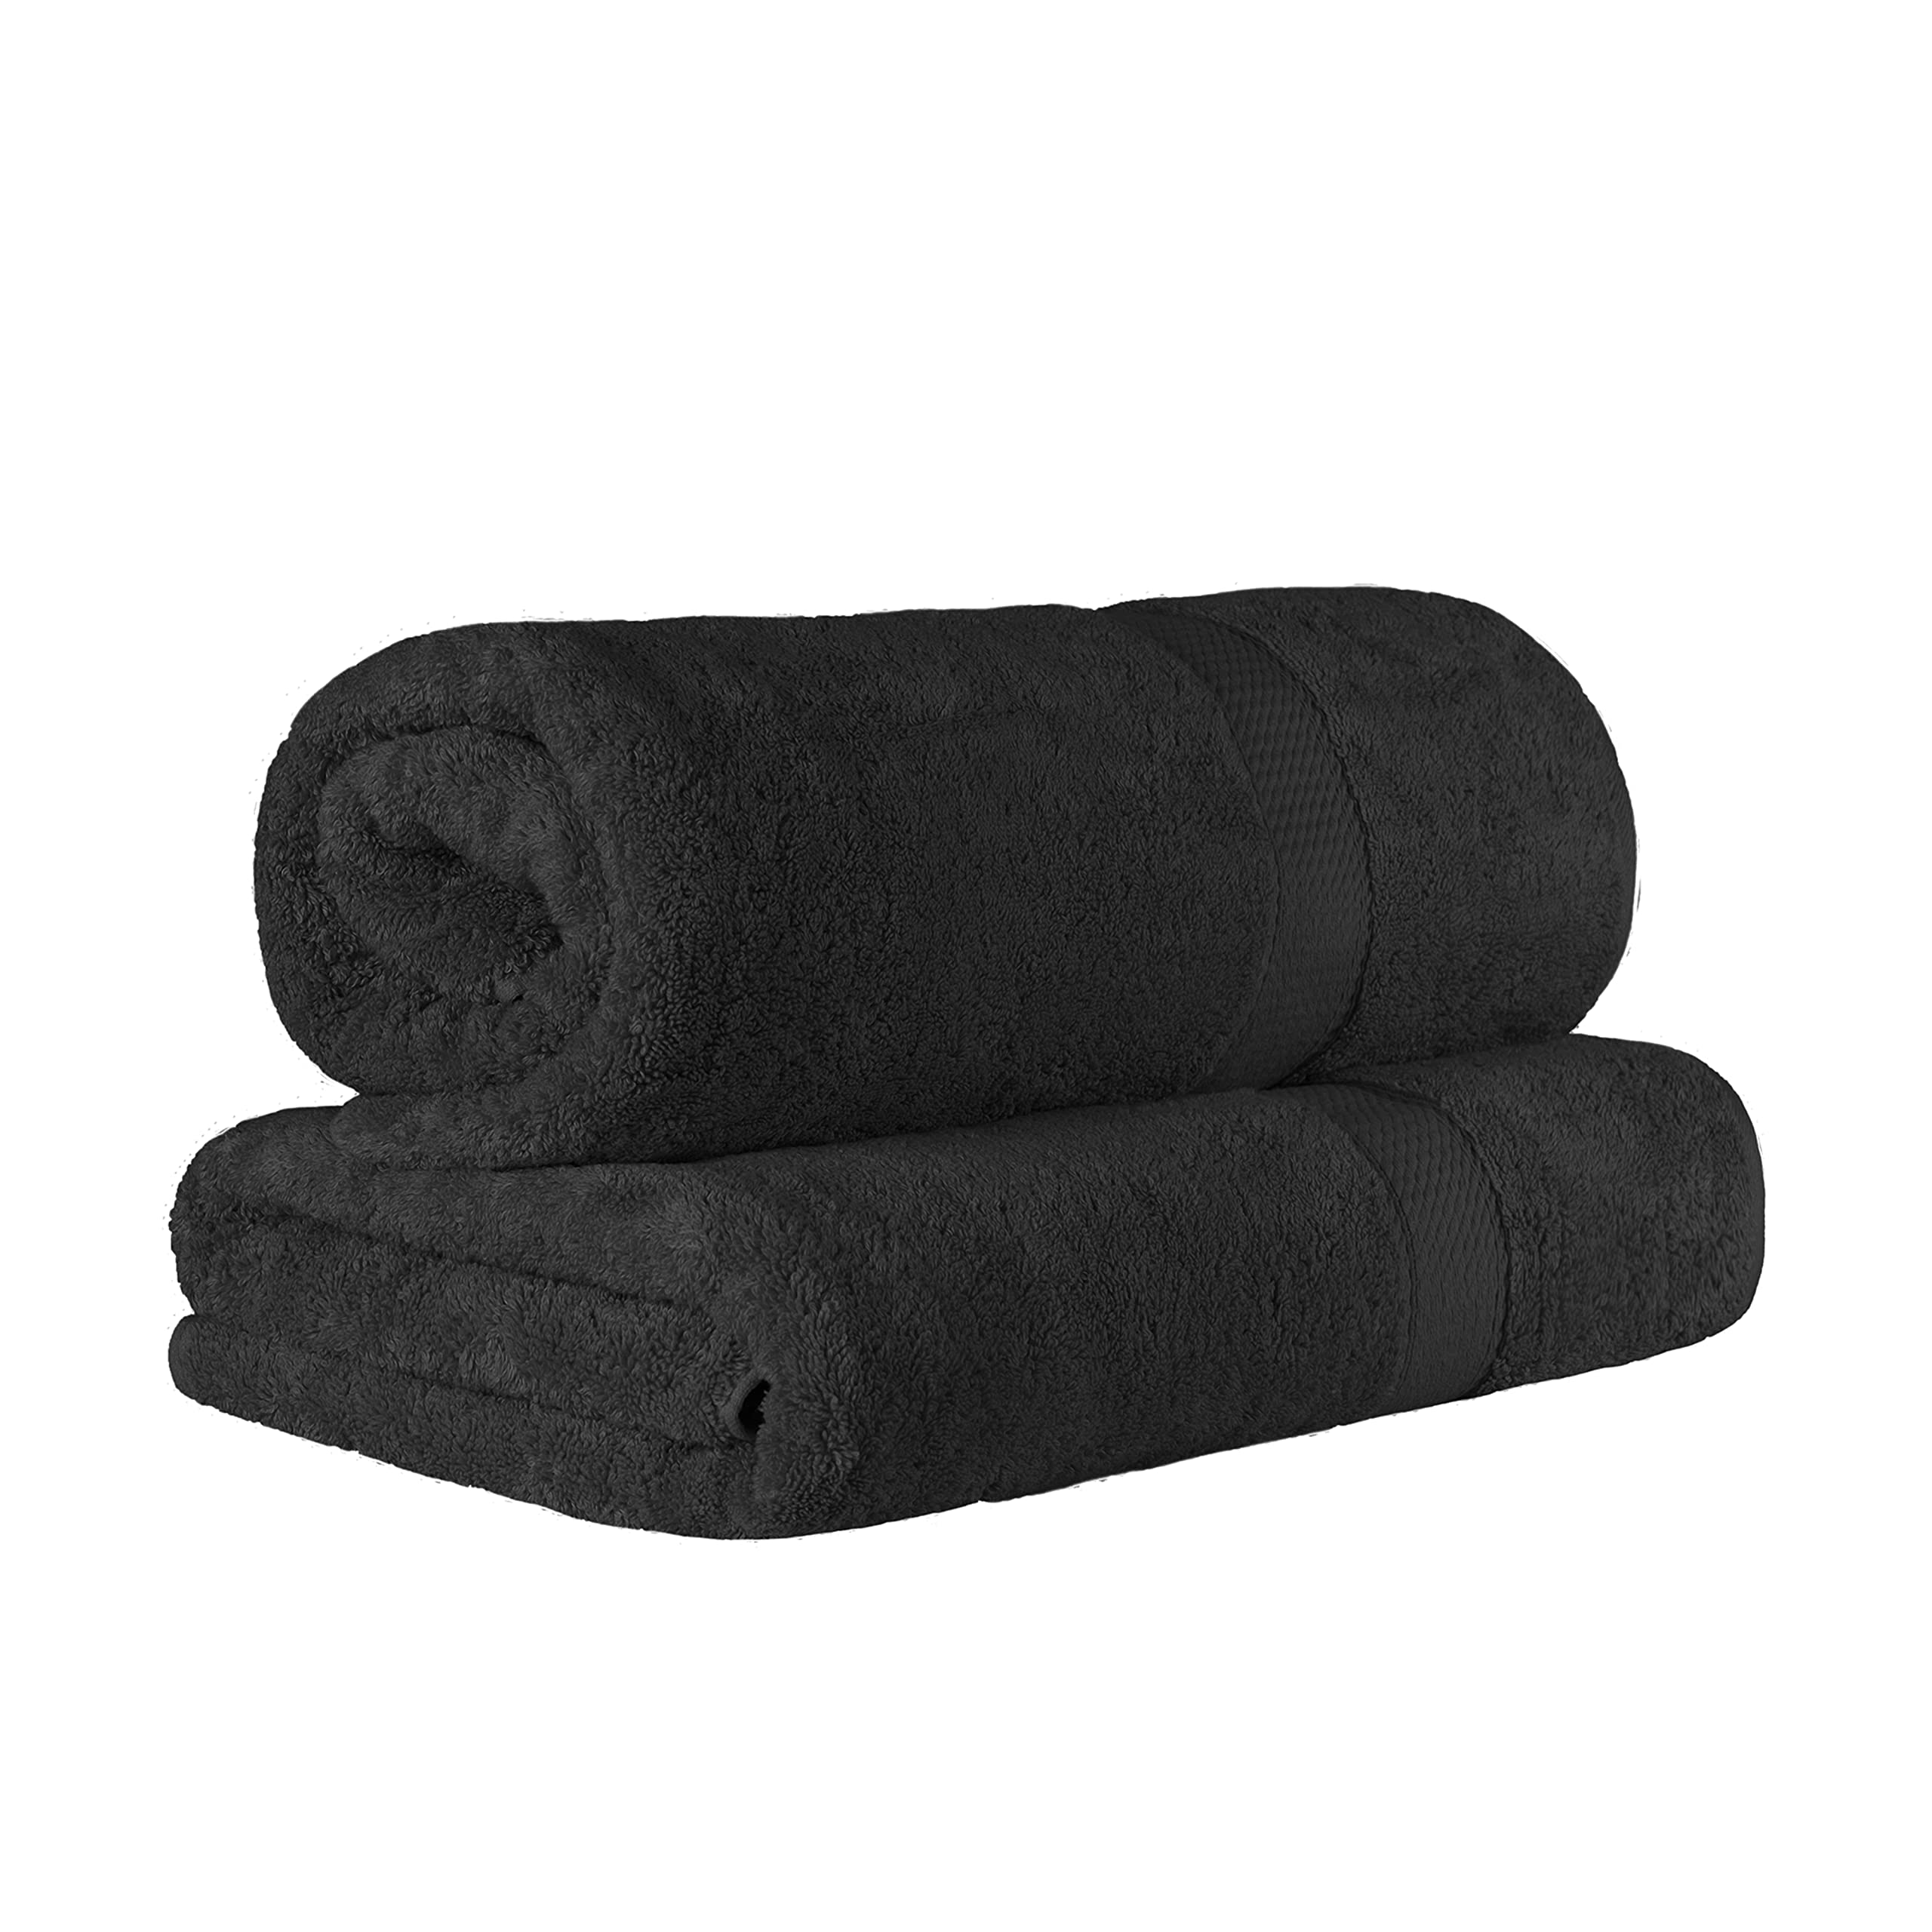 SUPERIOR 埃及棉 2 件套纯色浴巾套装，浴巾 34 x 68，800 GSM，2 件套，黑色